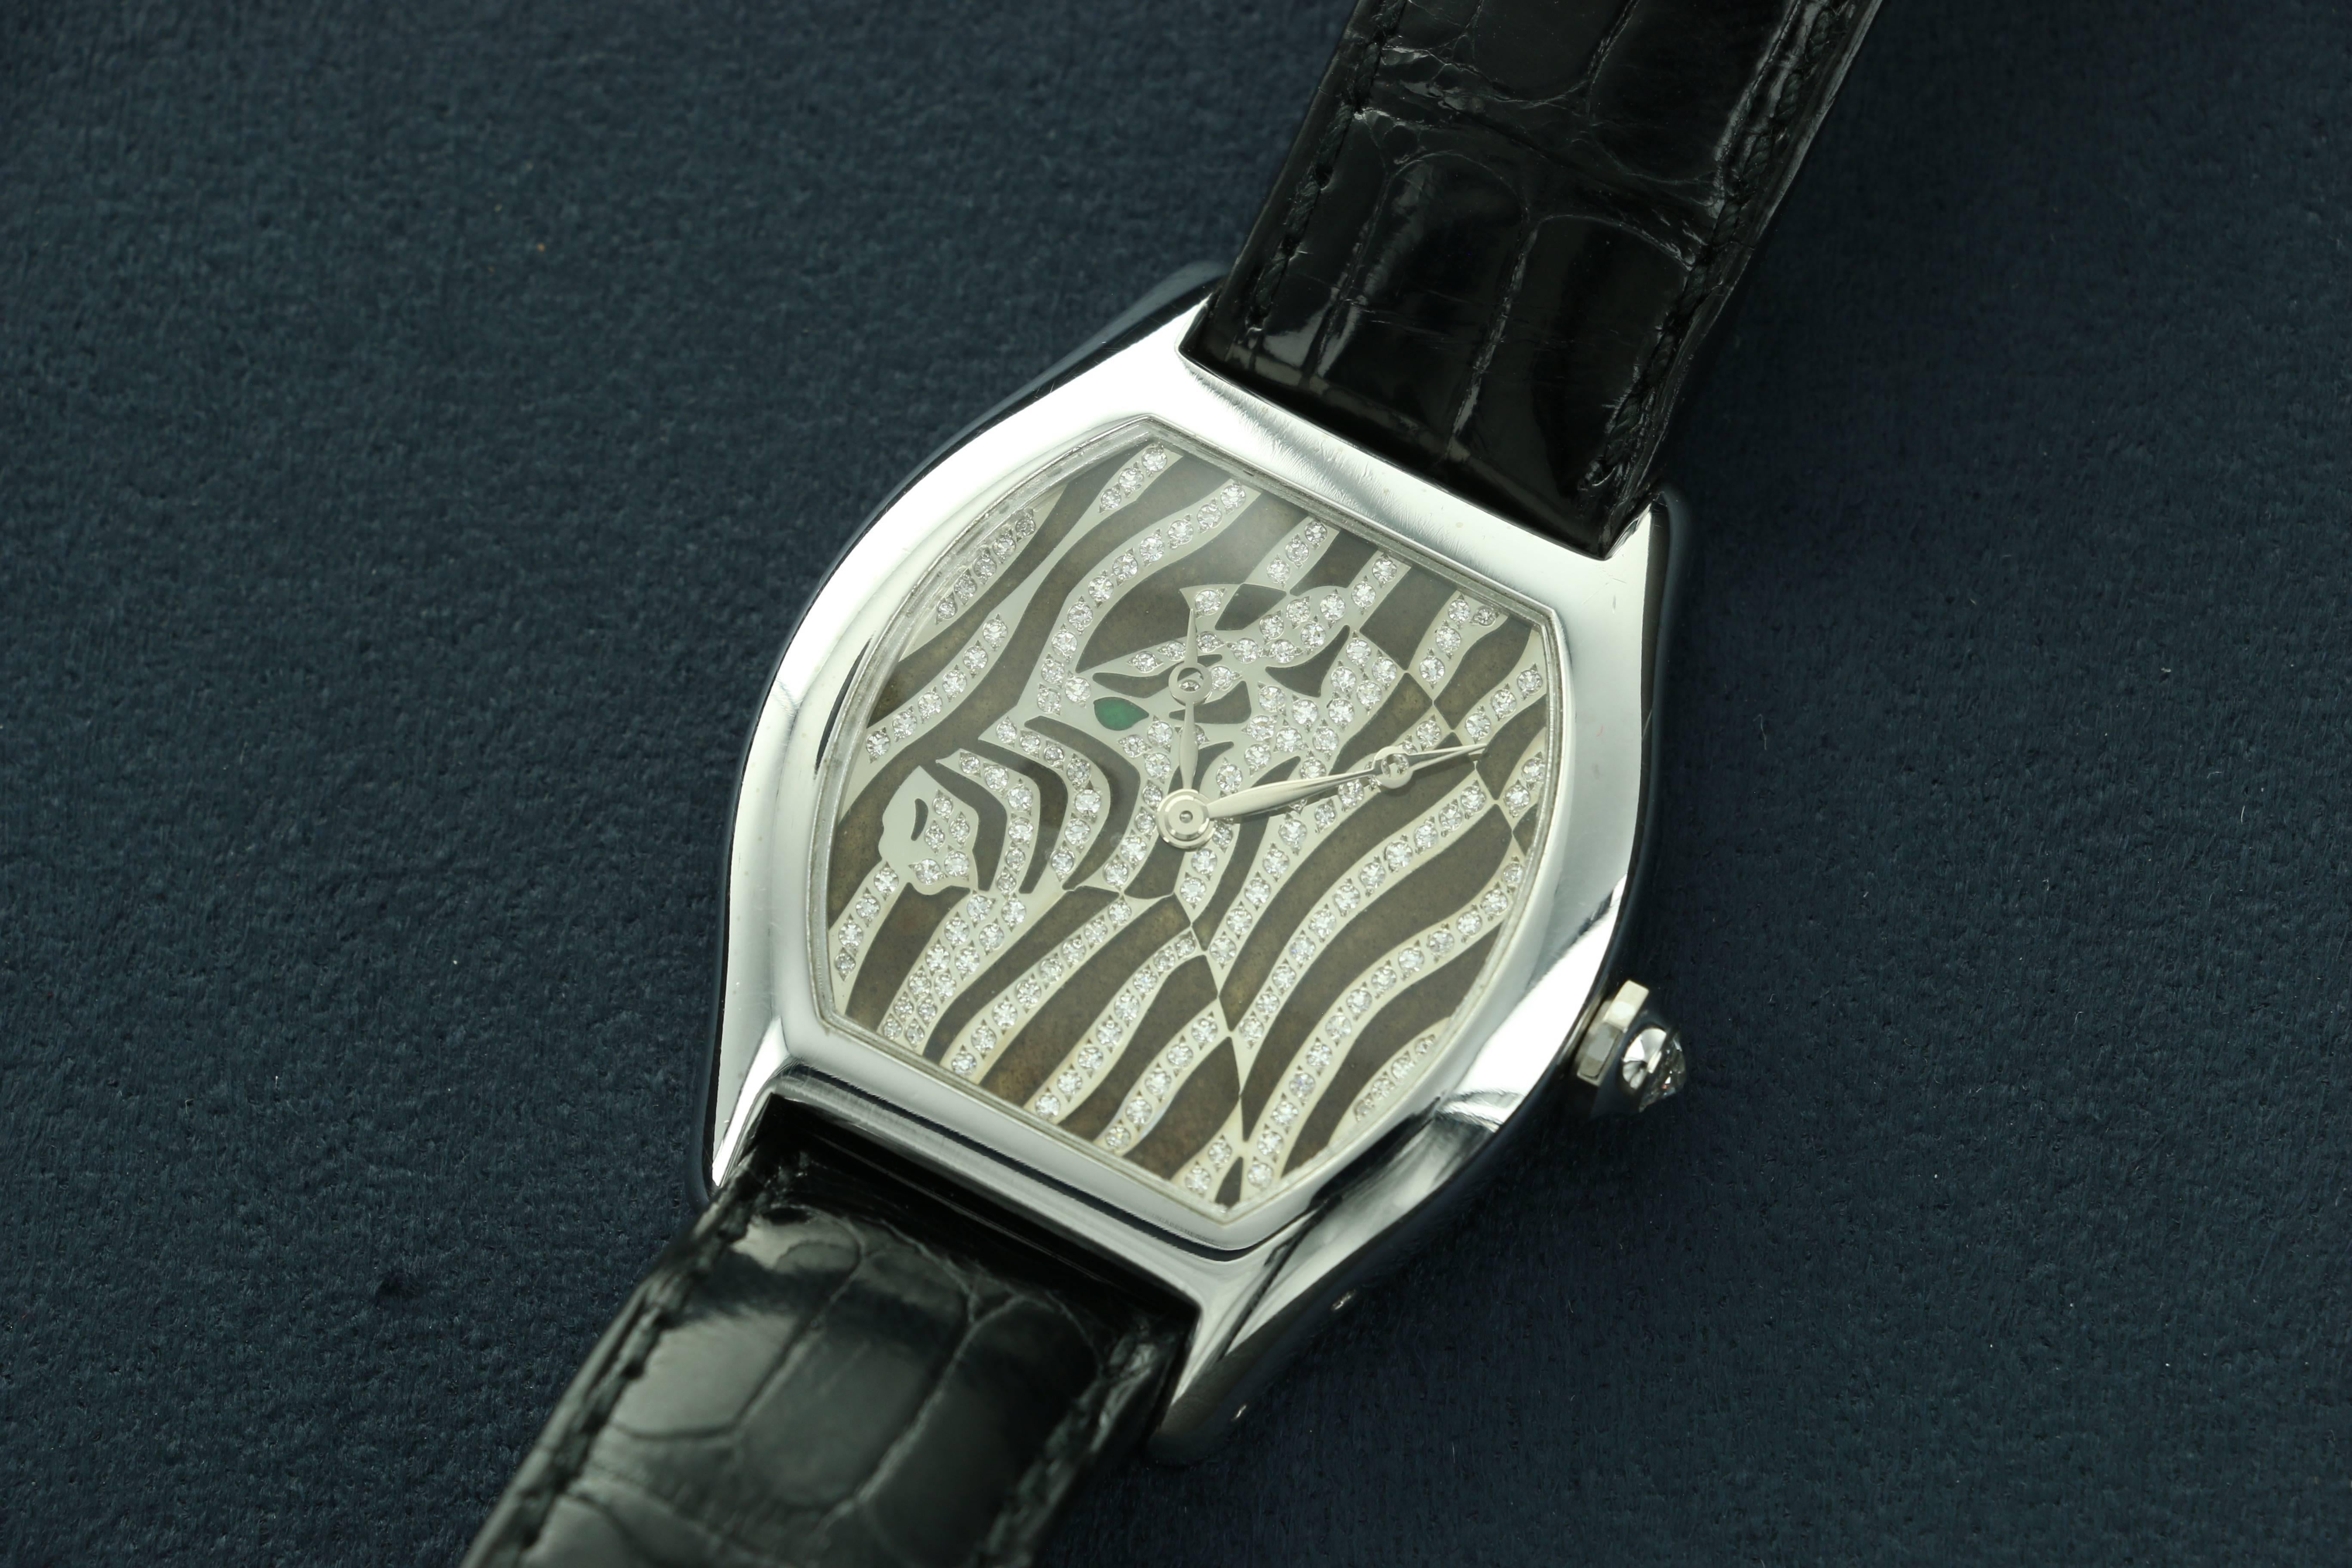 zebra watch